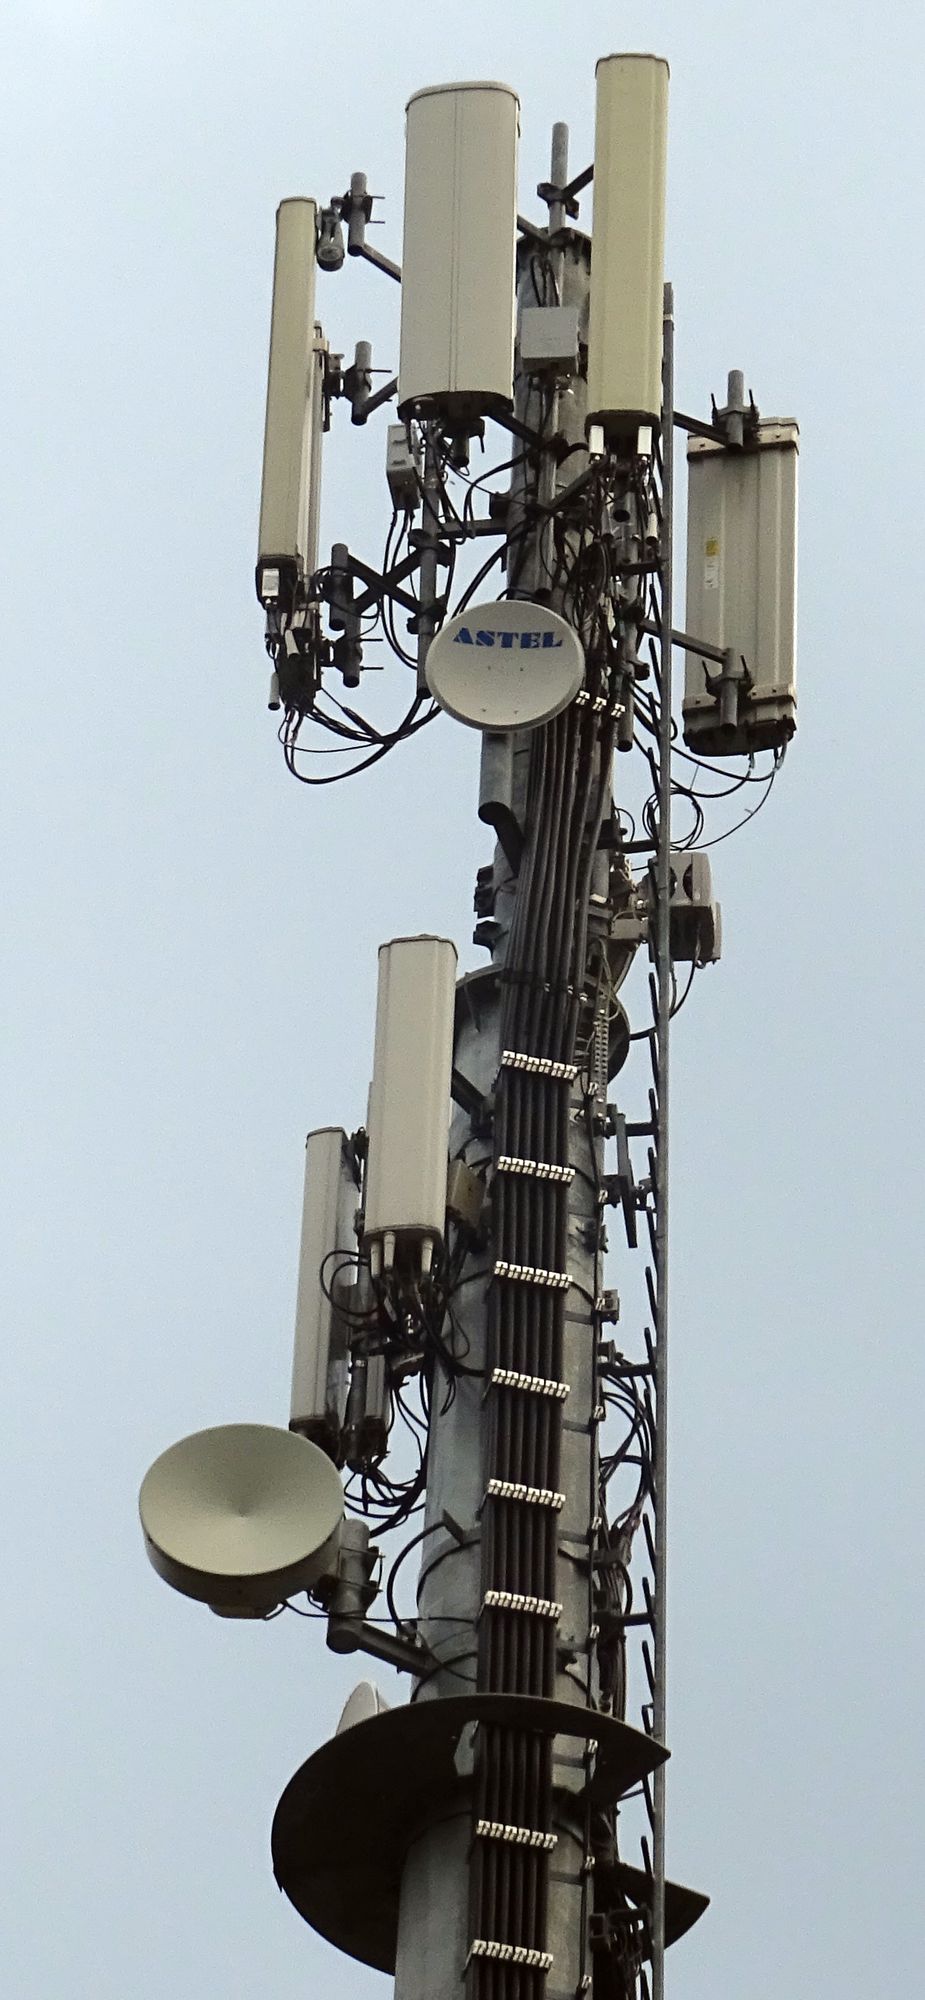 Die Antennen von Wind3 (oben) und Vodafone im August 2020. Foto Daniel Z.